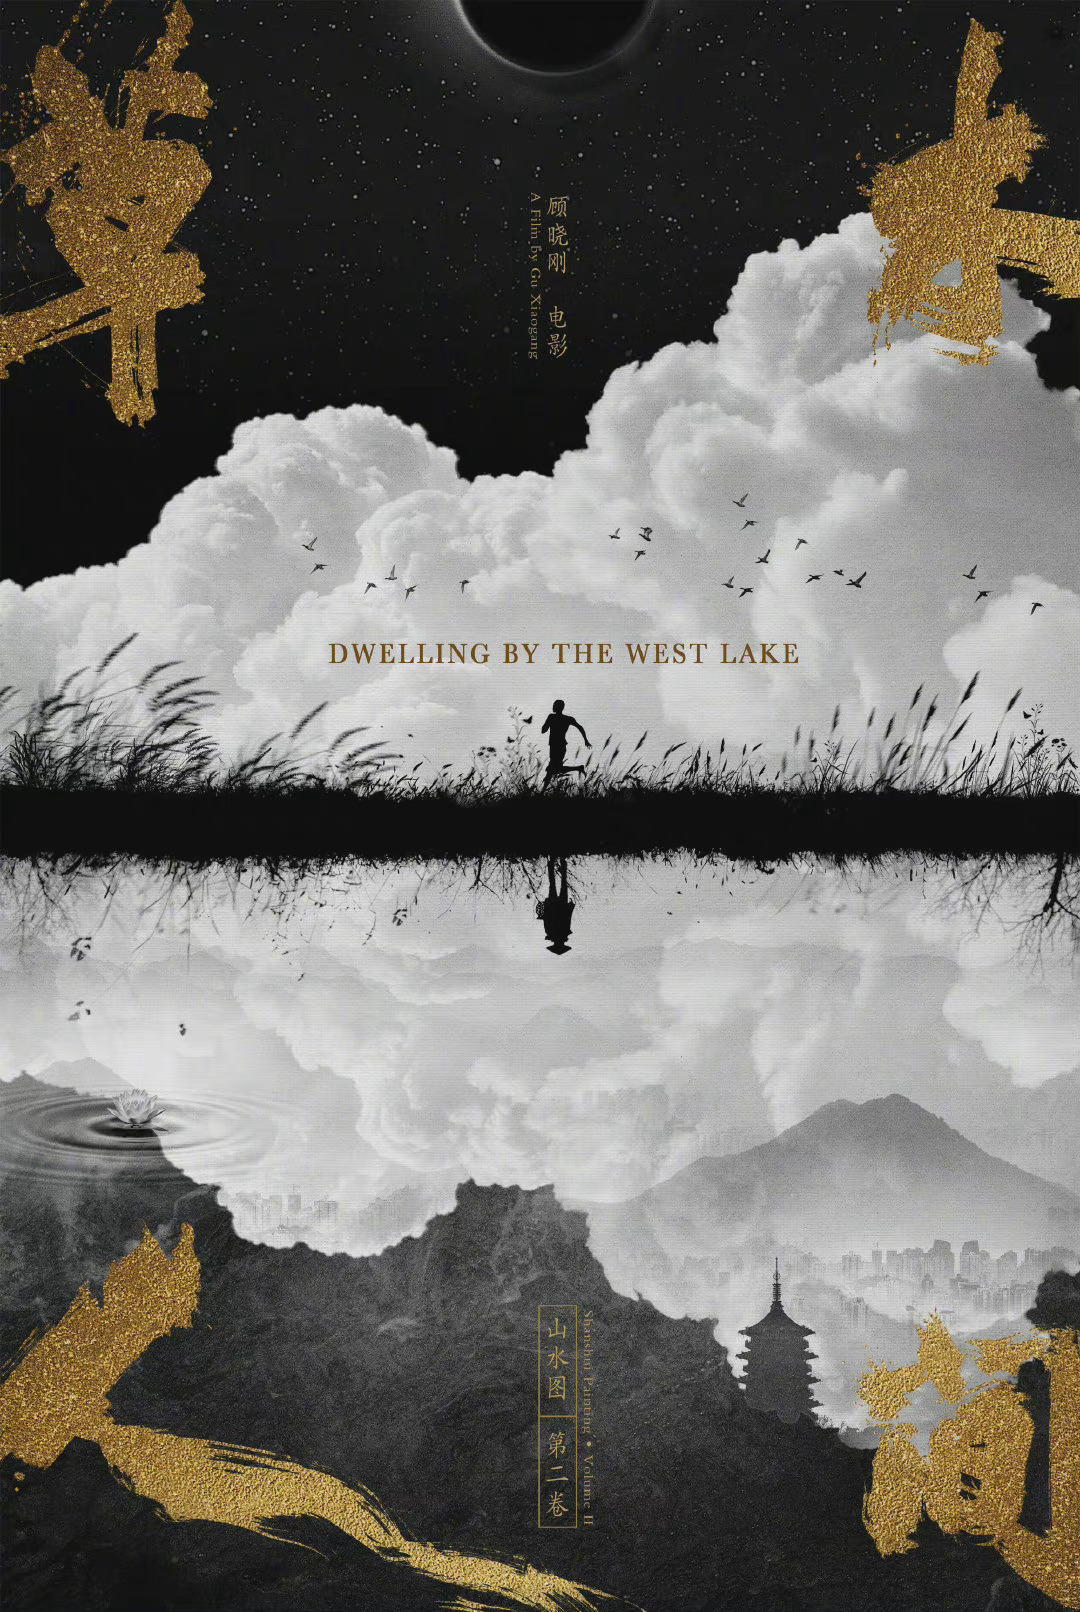 草木人间 - Dwelling by the West Lake